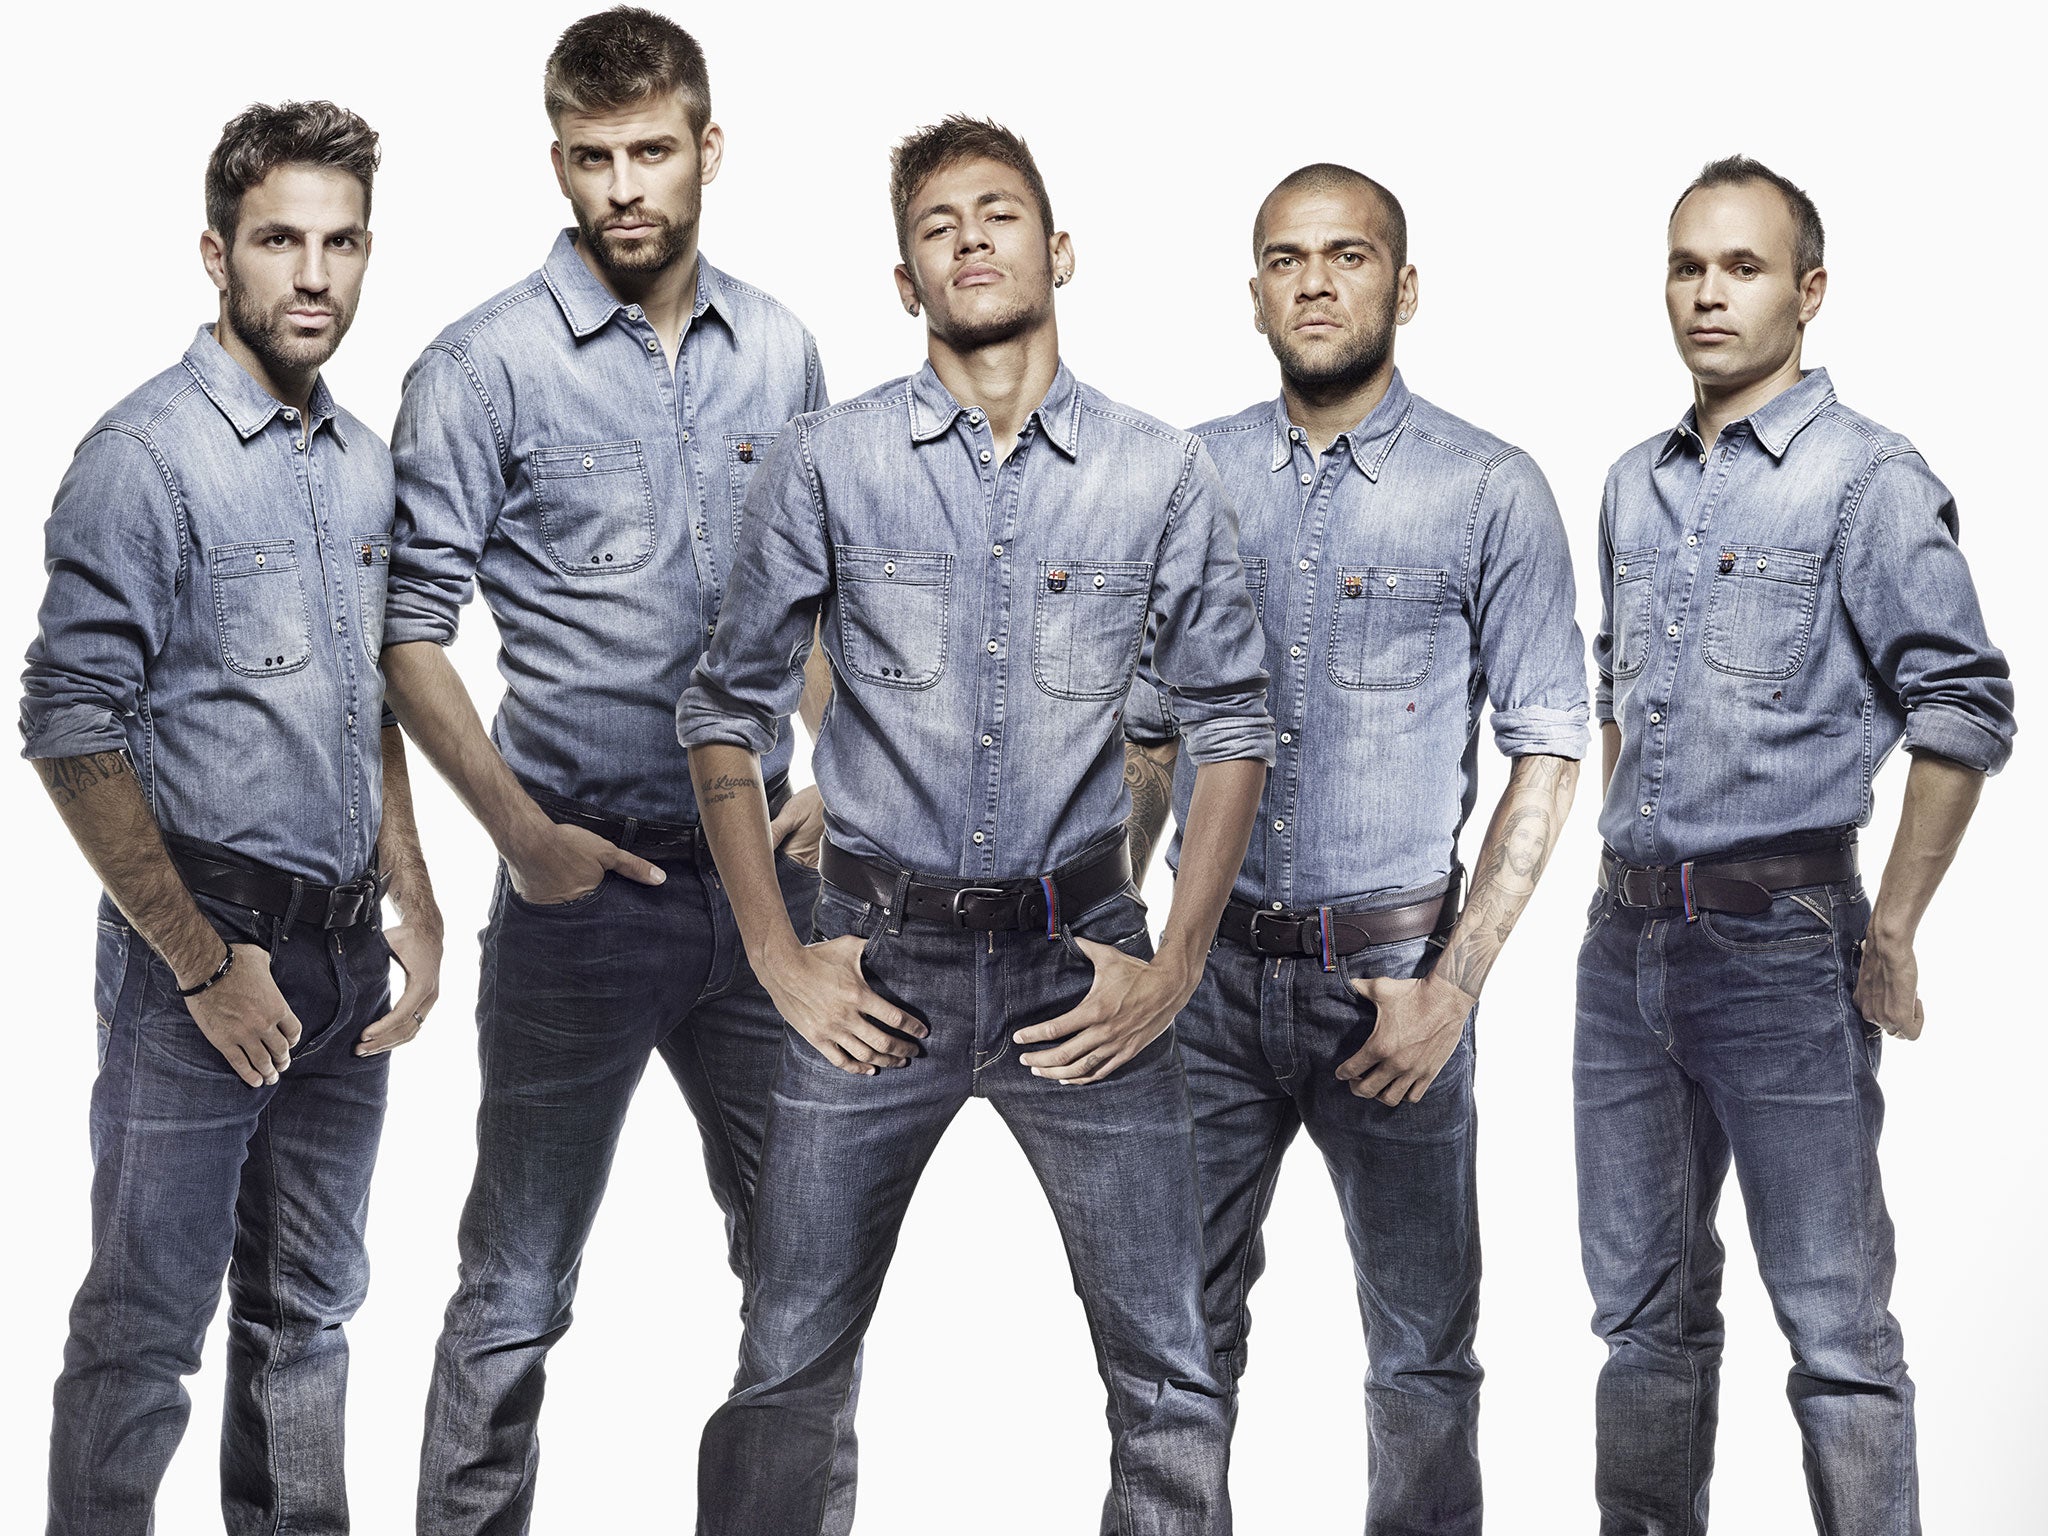 (l-r) Cesc Fabregas, Gerard Pique, Neymar, Dani Alves, Andre Iniesta pose in their double denim